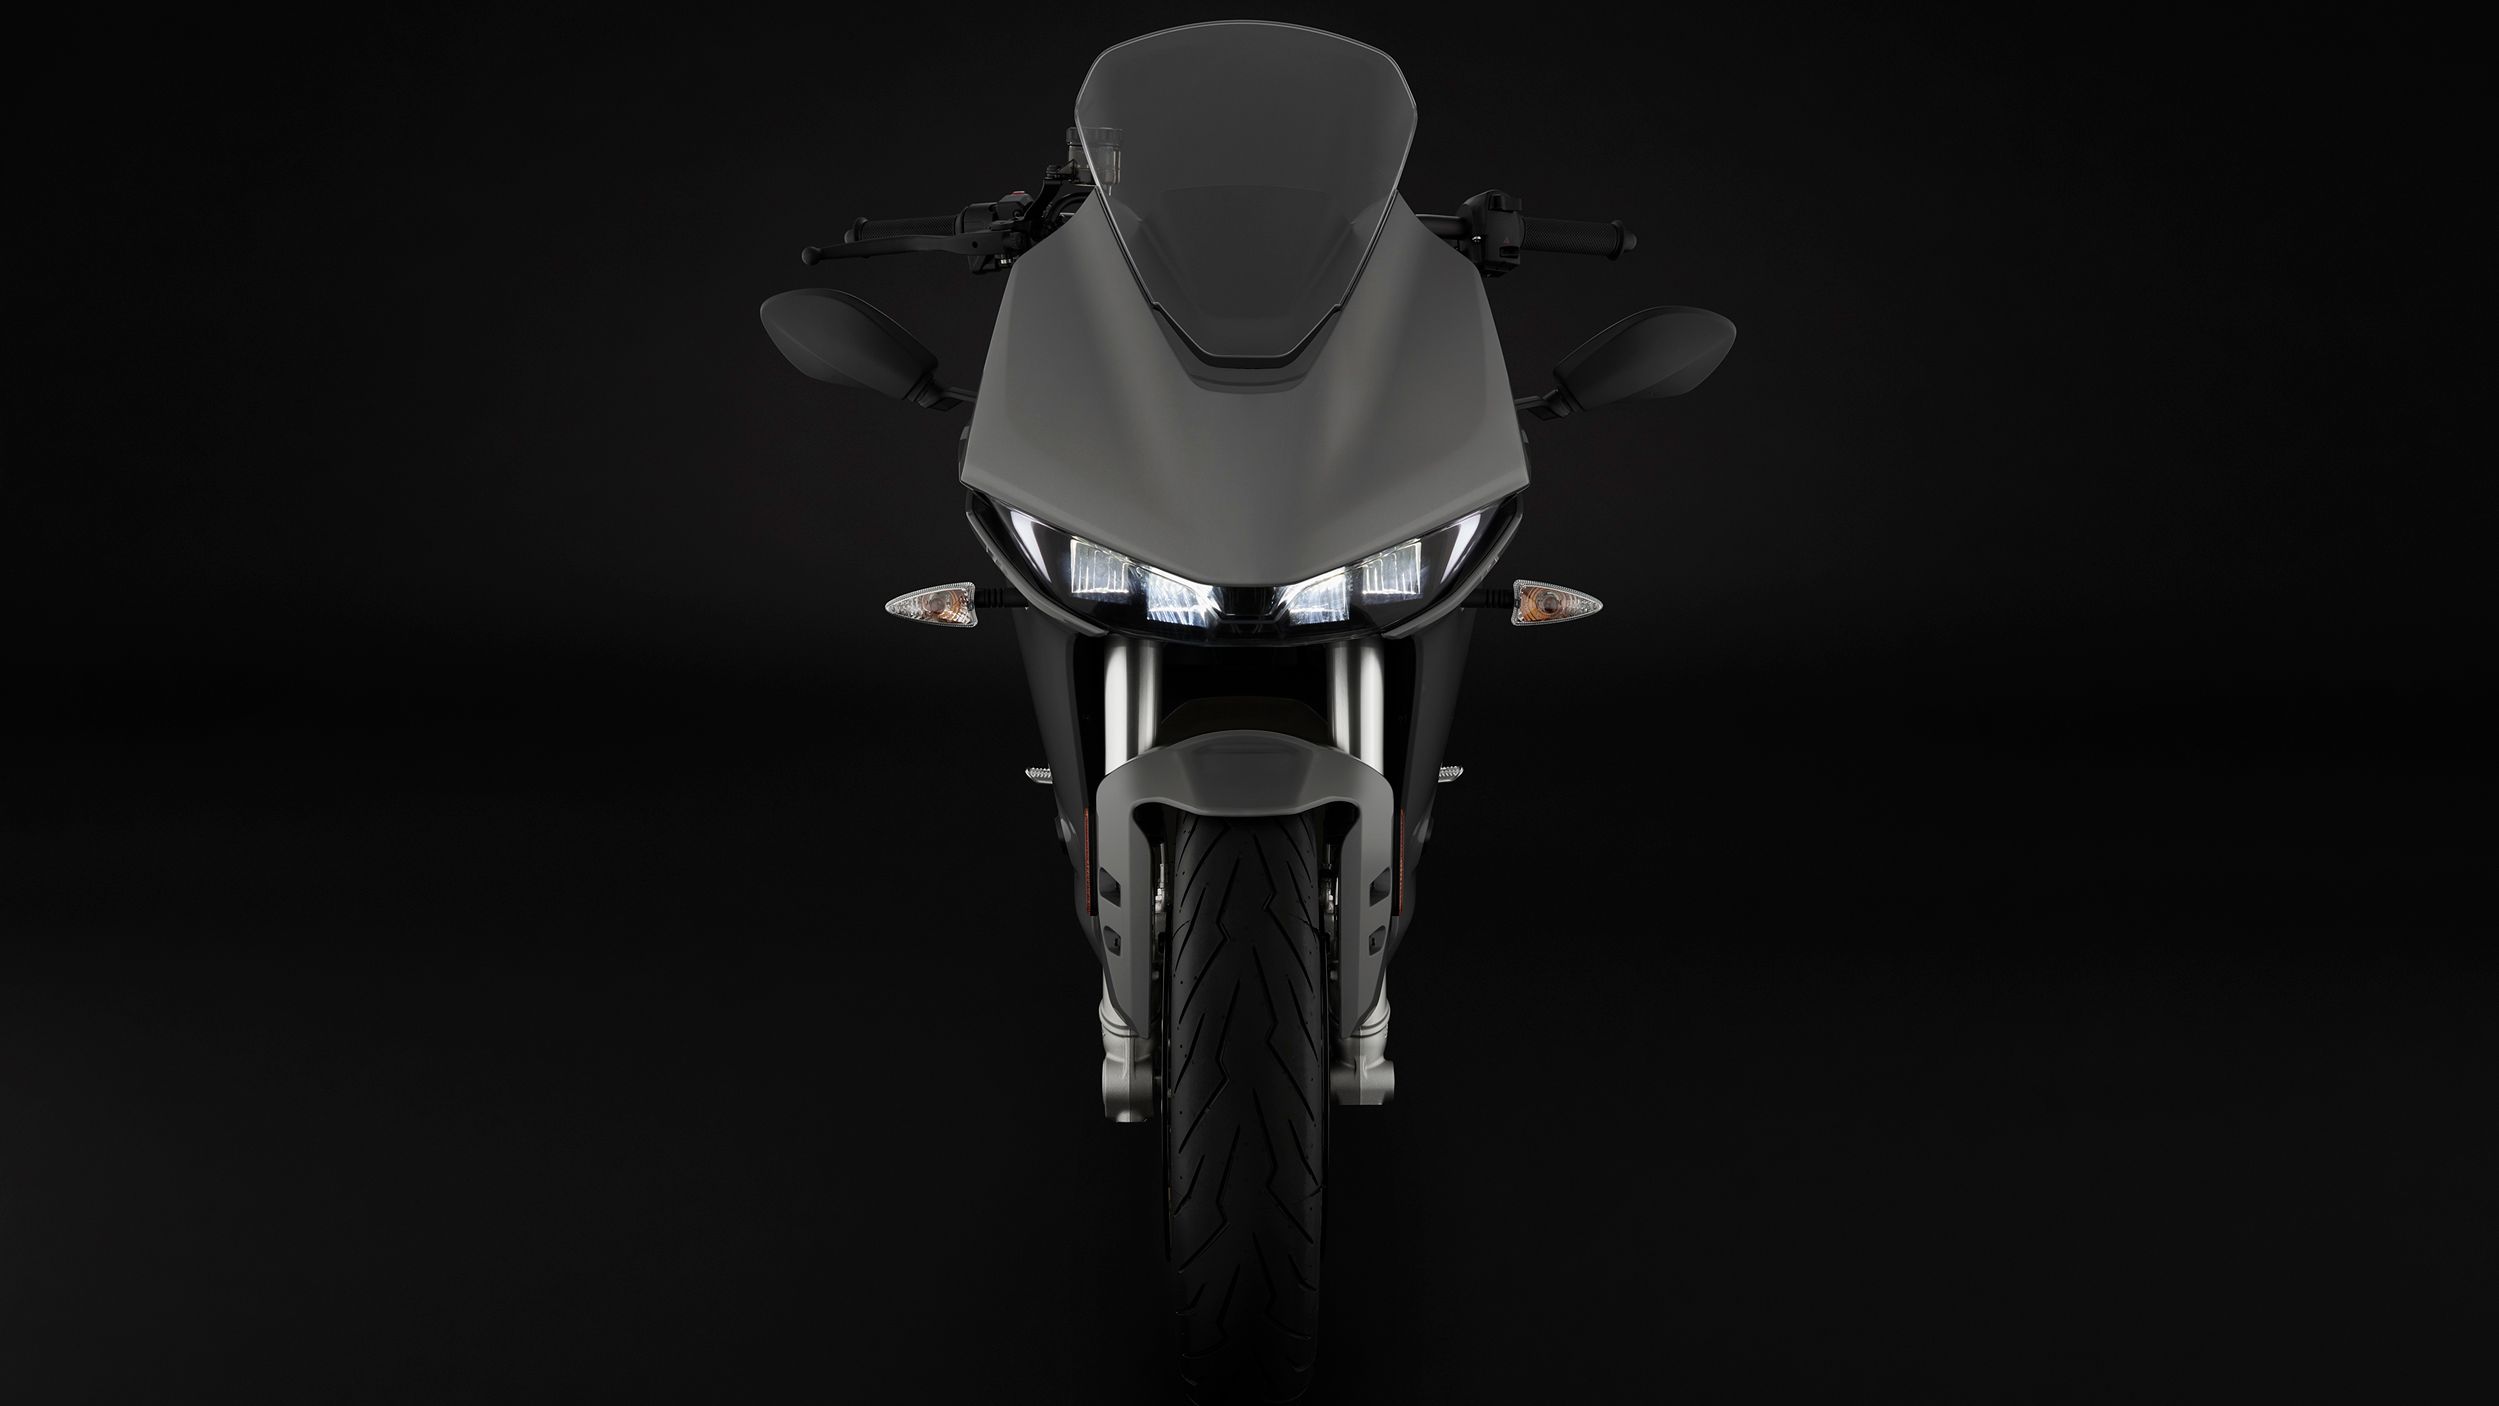 2020 Zero Motorcycle SR/S